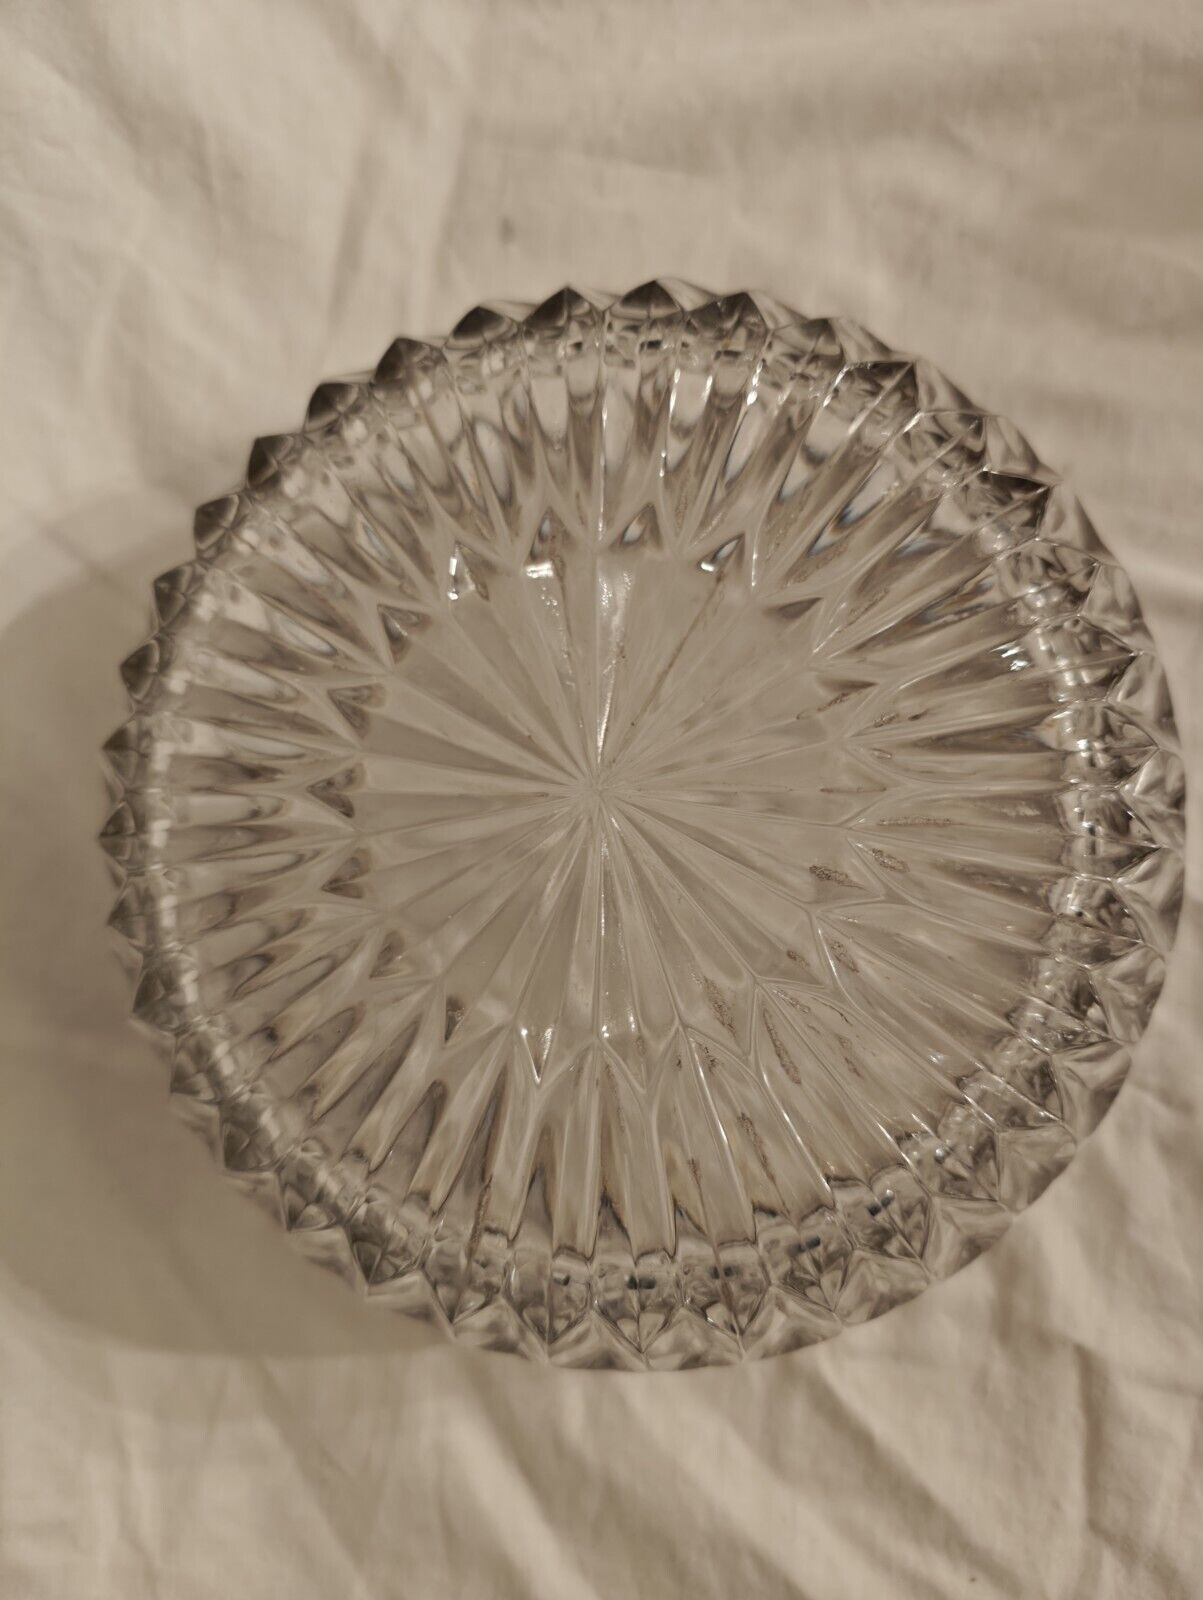 Vintage Leonard Crystal Servng Bowl with Silver Rim